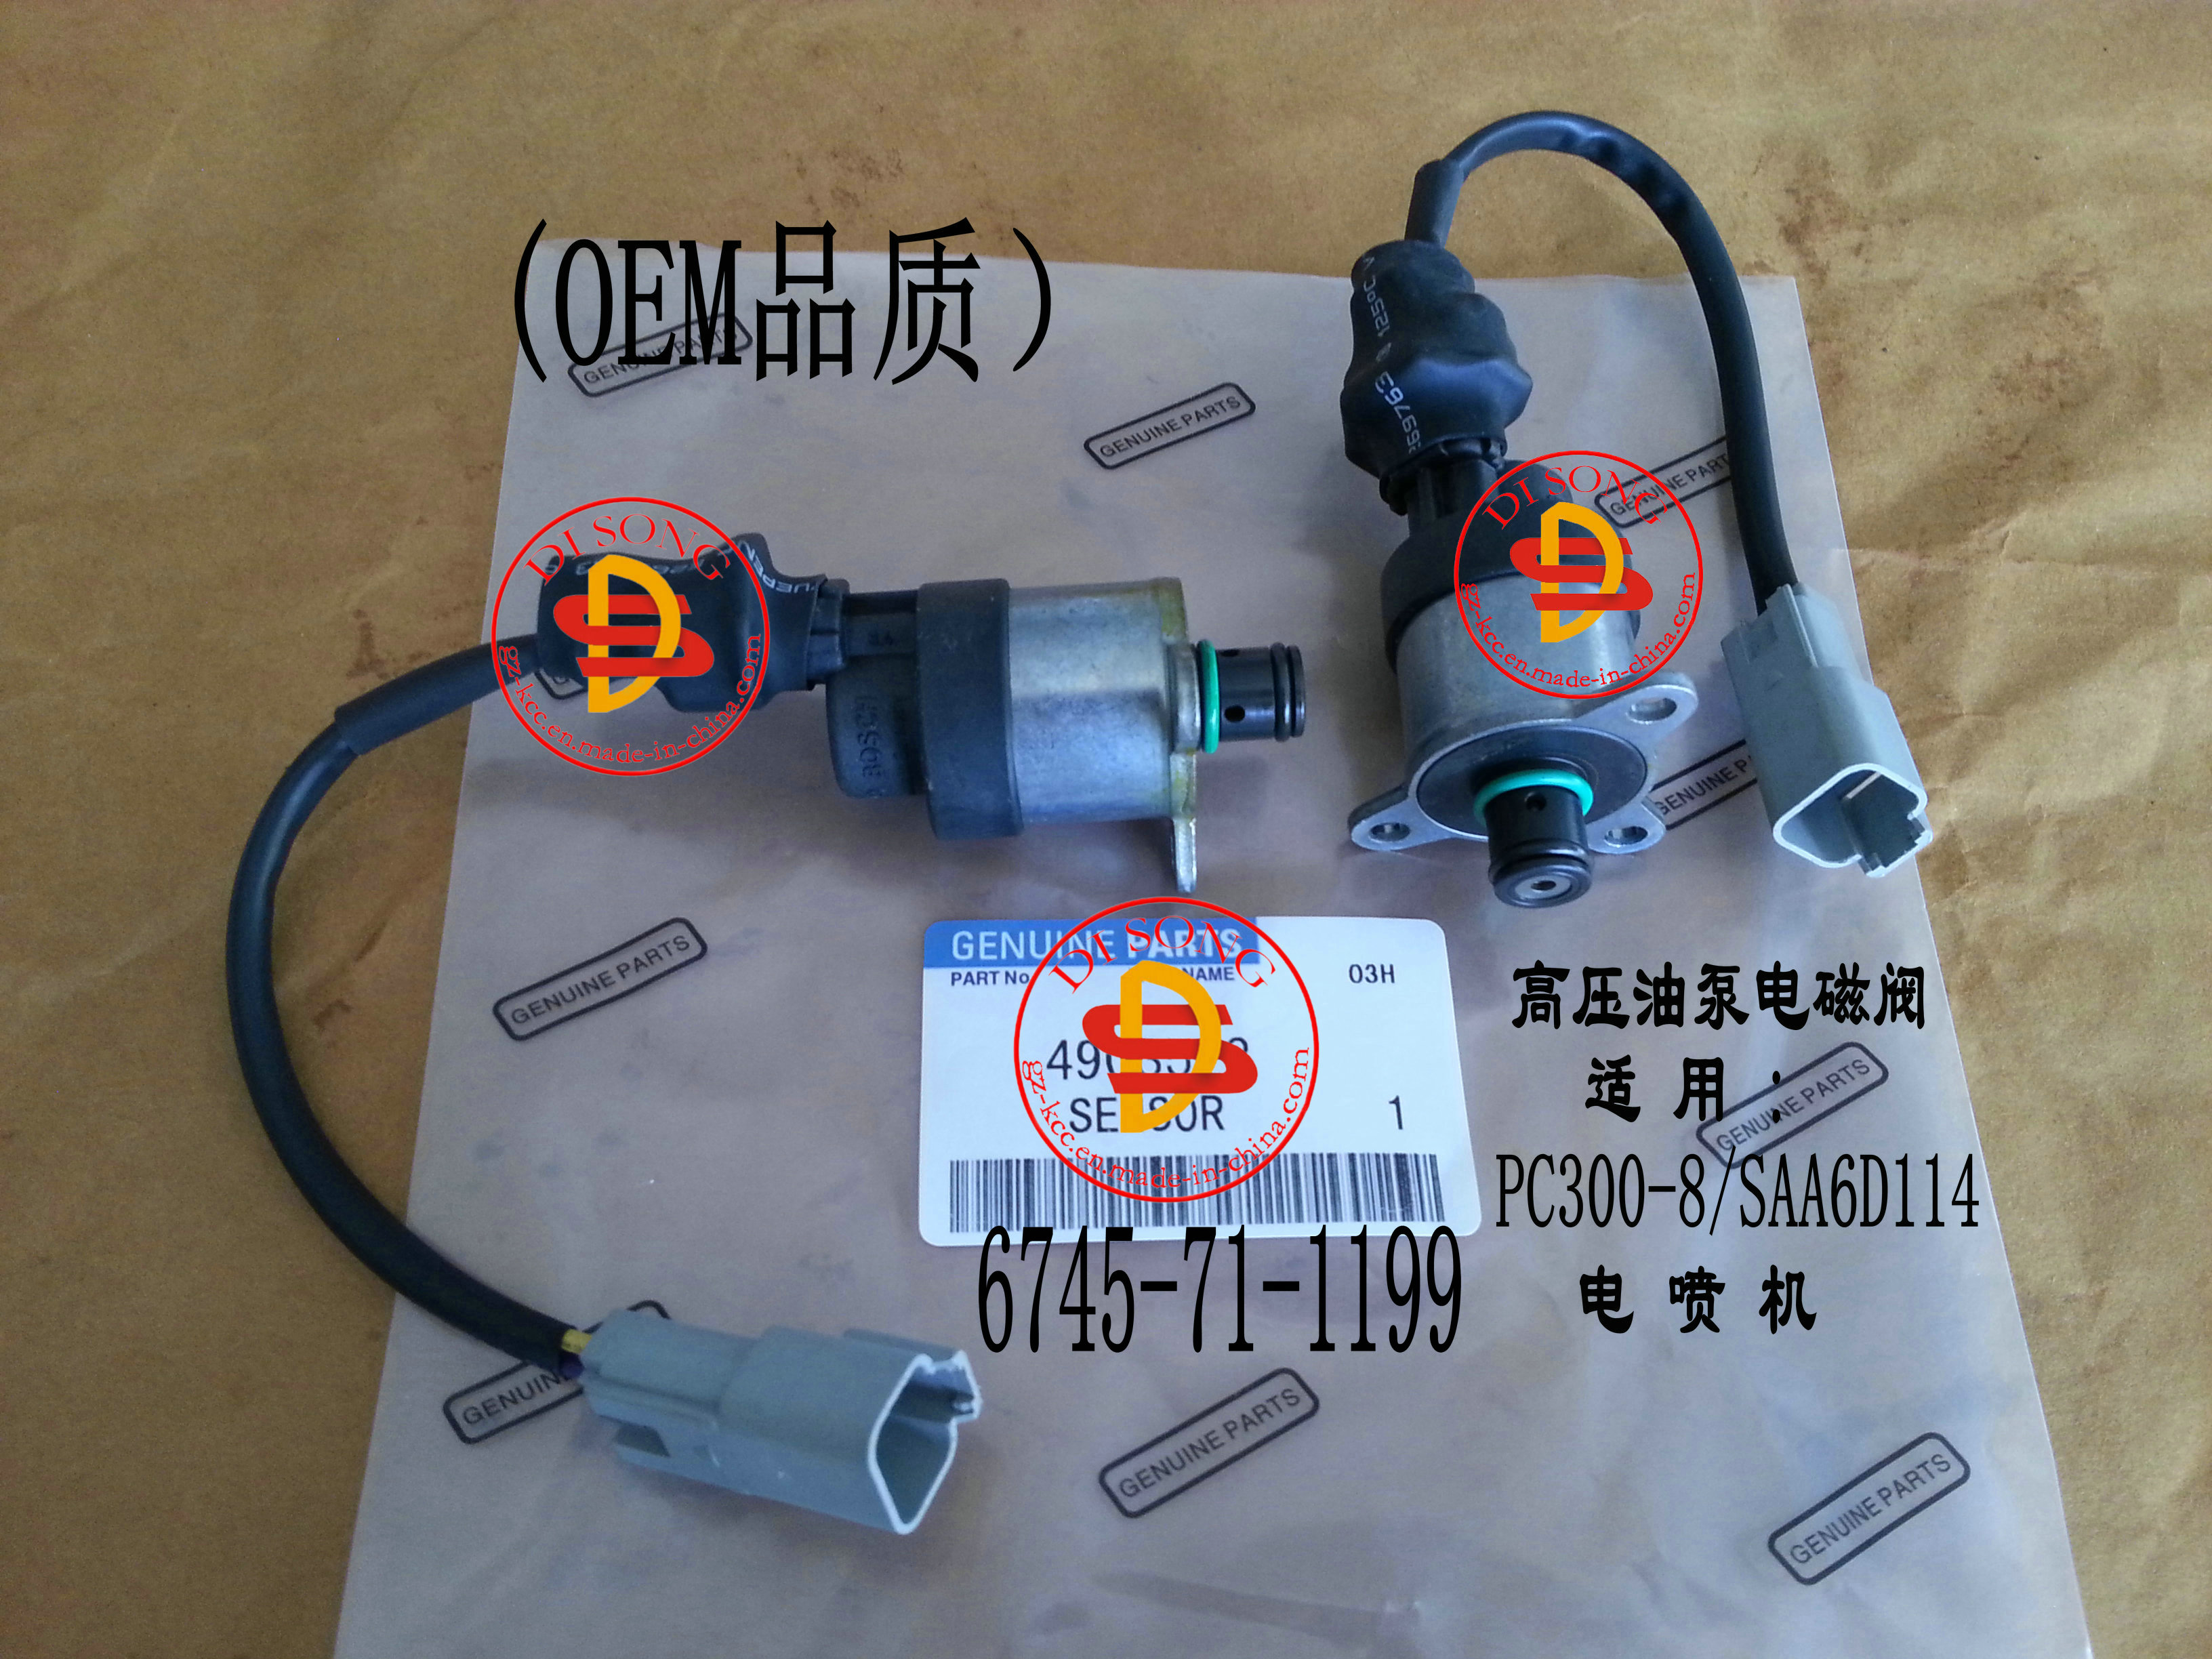 高压泵电磁阀6745-71-1199,pc300-8